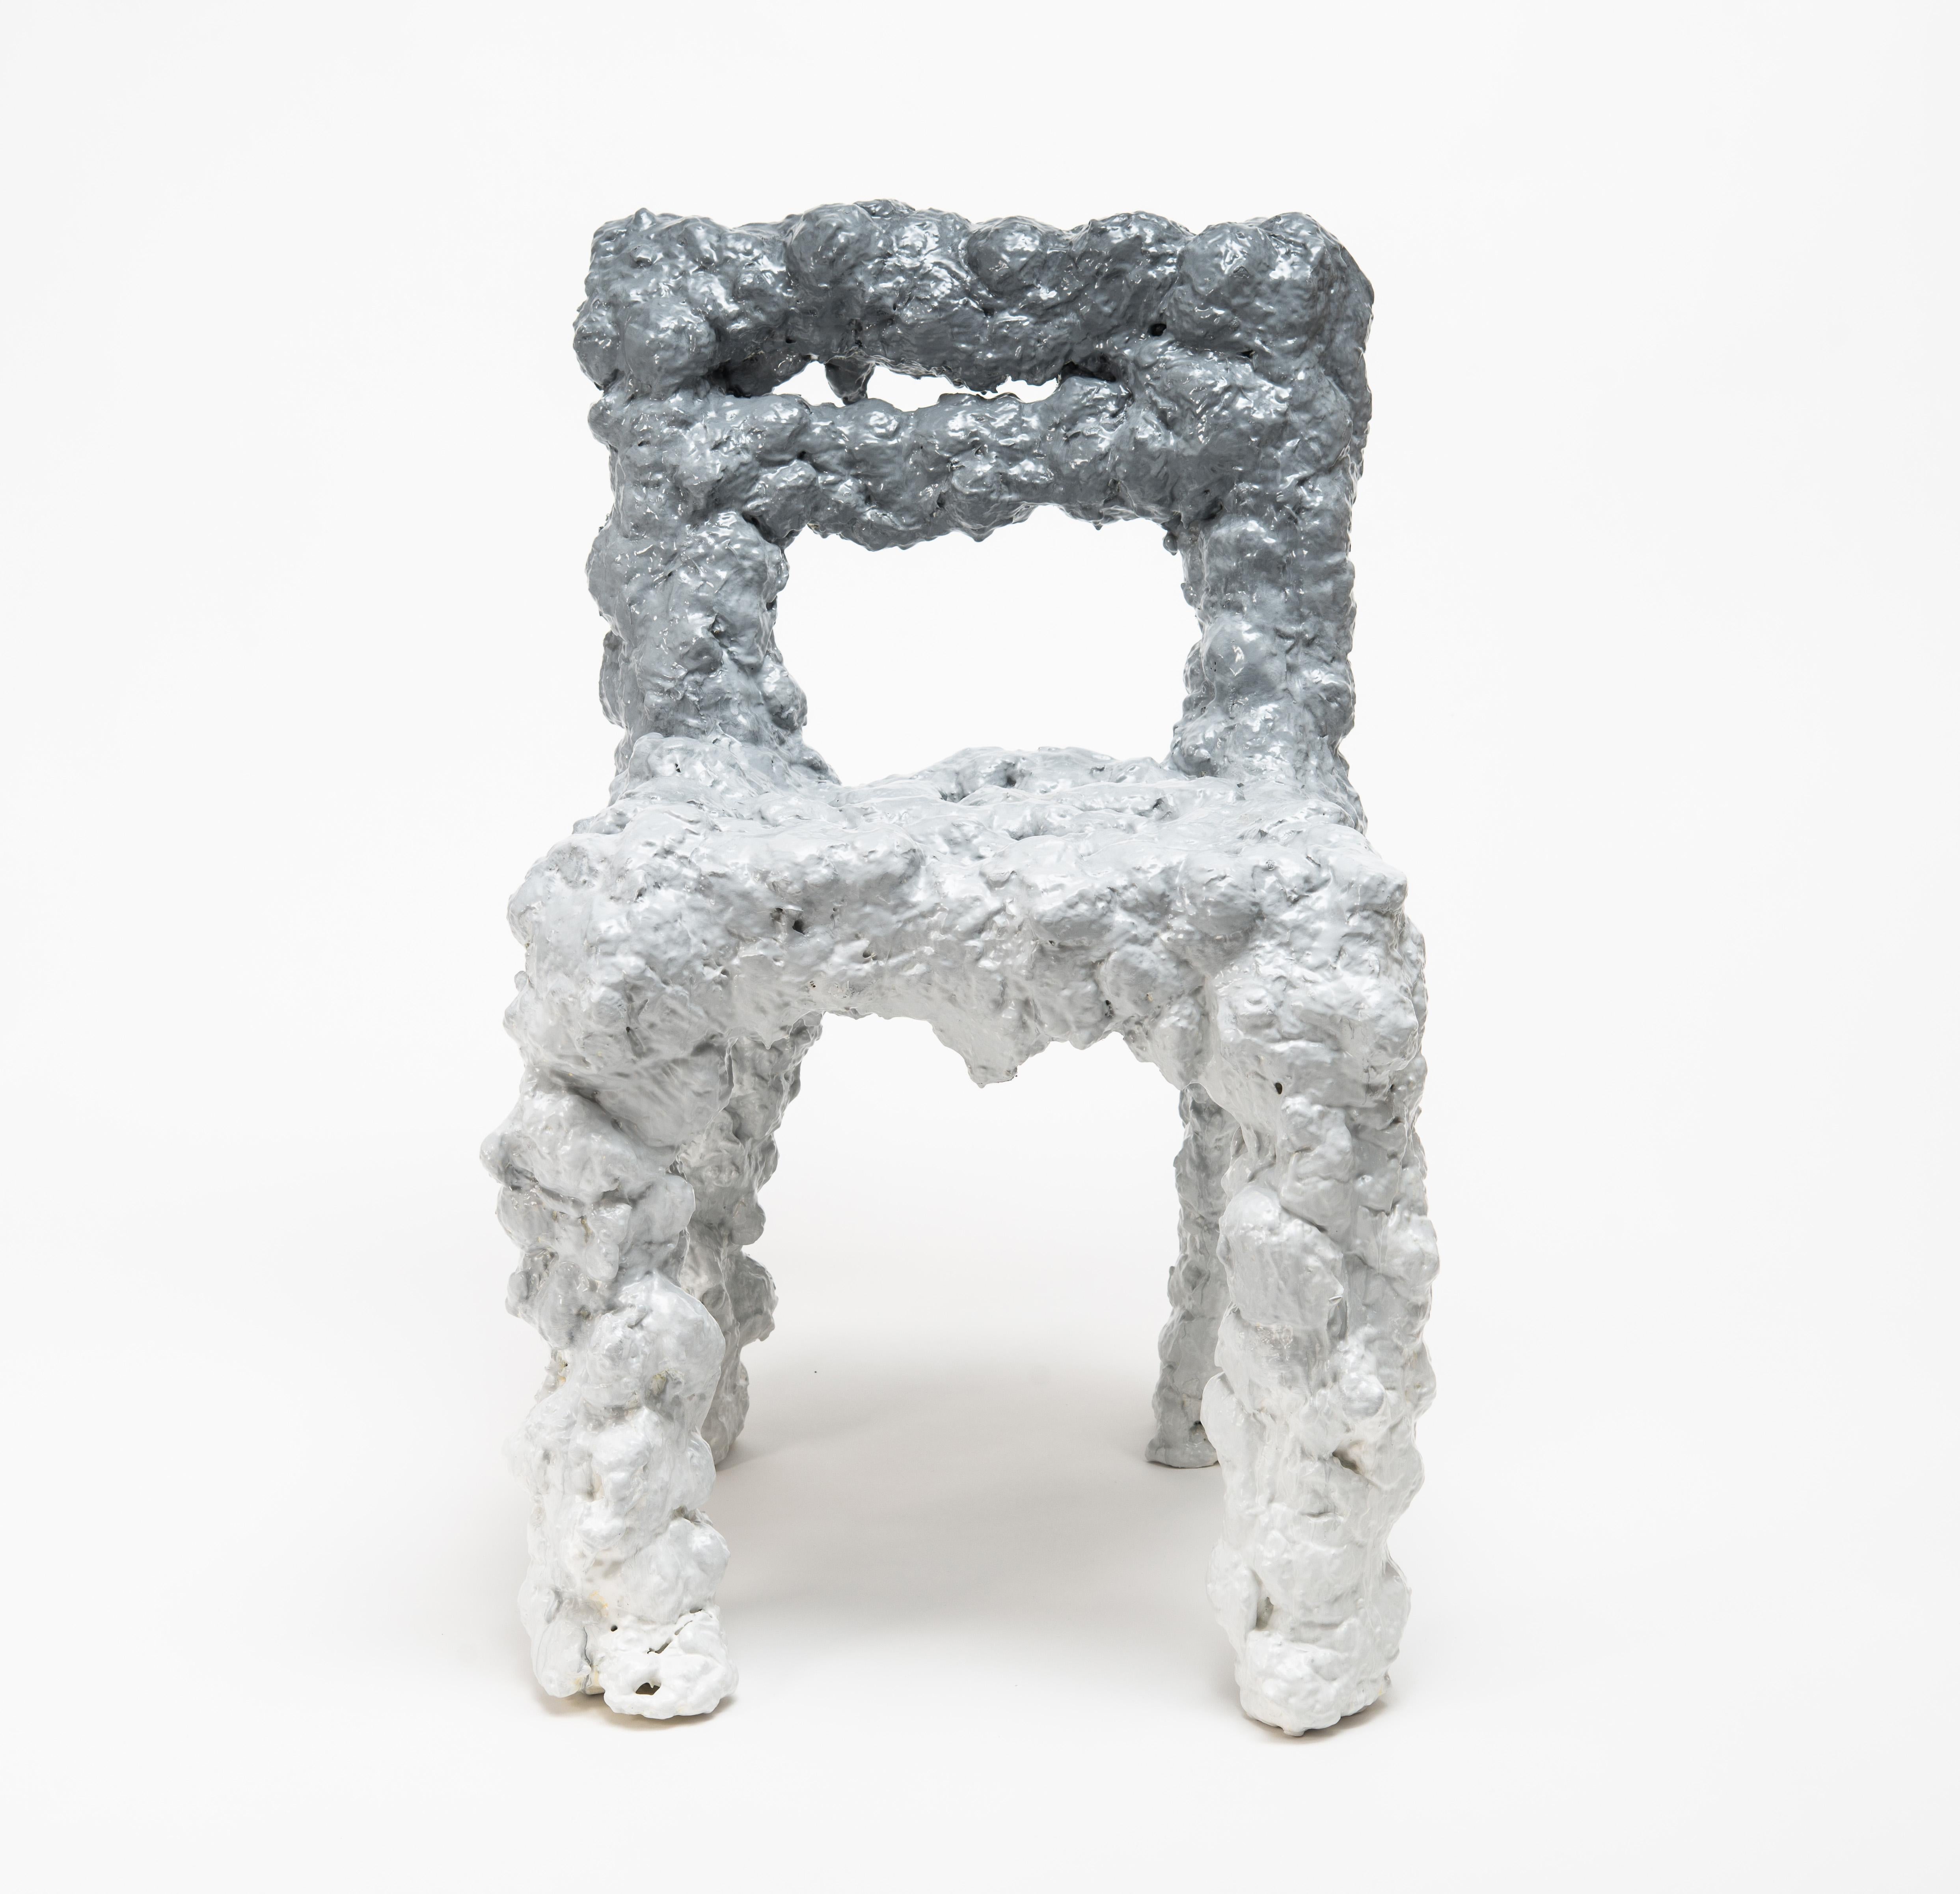 L'idée de la chaise Cloud est d'utiliser l'expansion naturelle d'une mousse de polyuréthane utilisée dans la construction pour l'isolation. Le concept est de créer un nuage ou une géométrie semblable à la vapeur par le processus de mousse